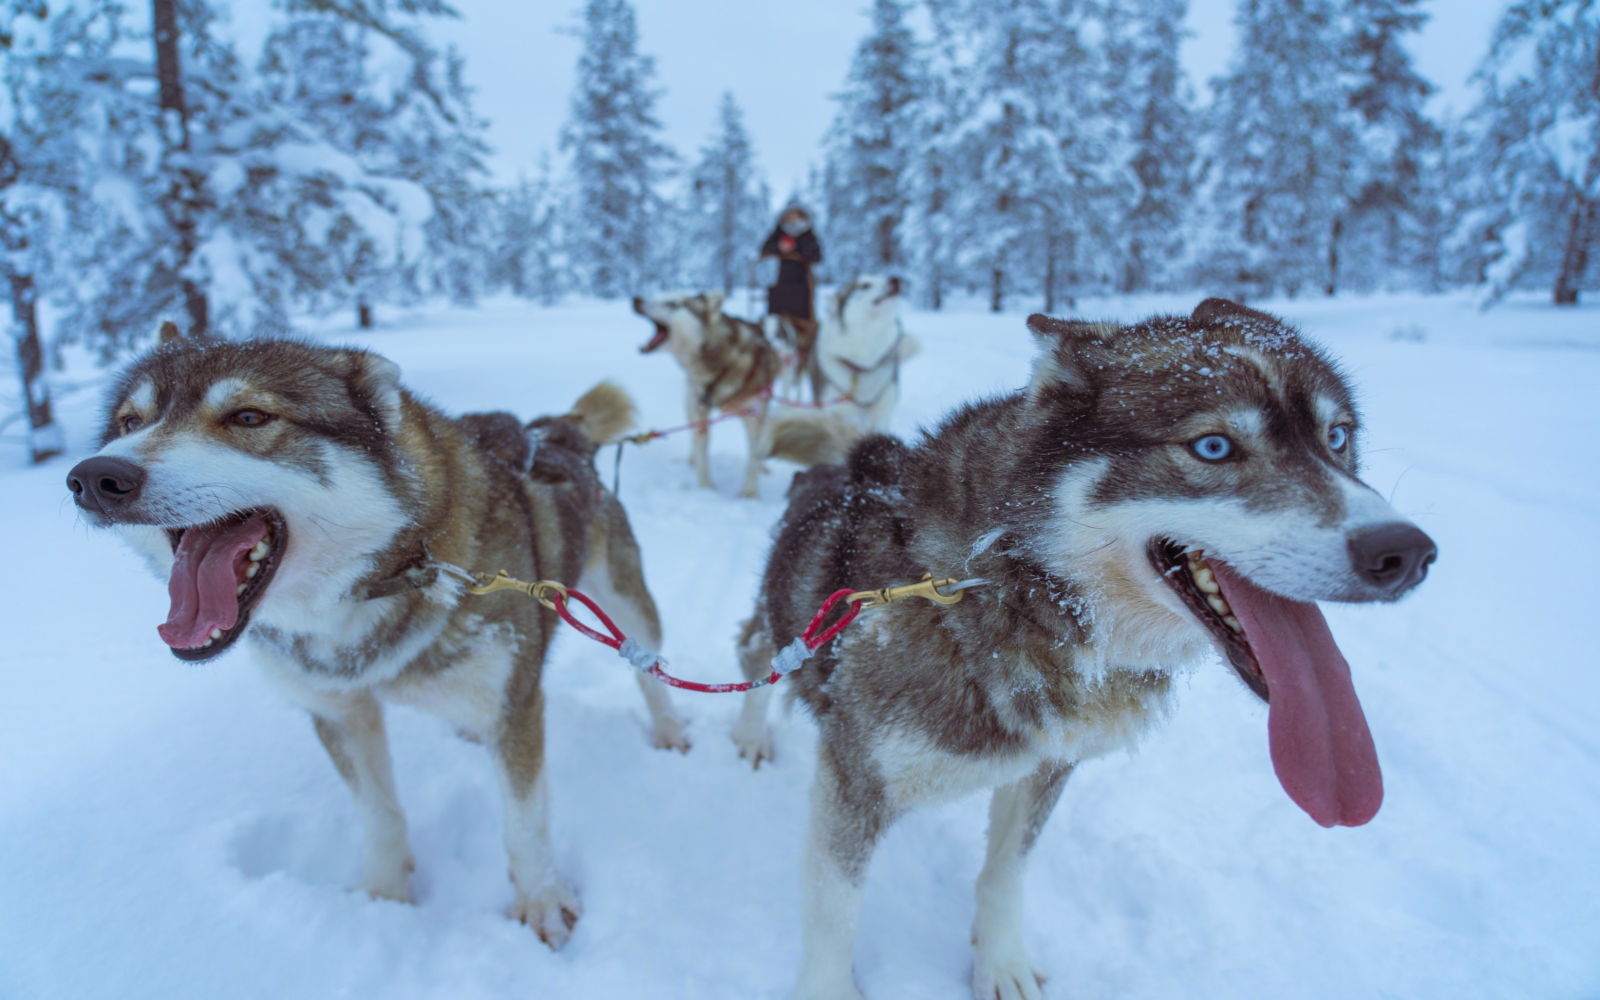 finlande norvege suede laponie safari chiens traineau balade voyage o-nord